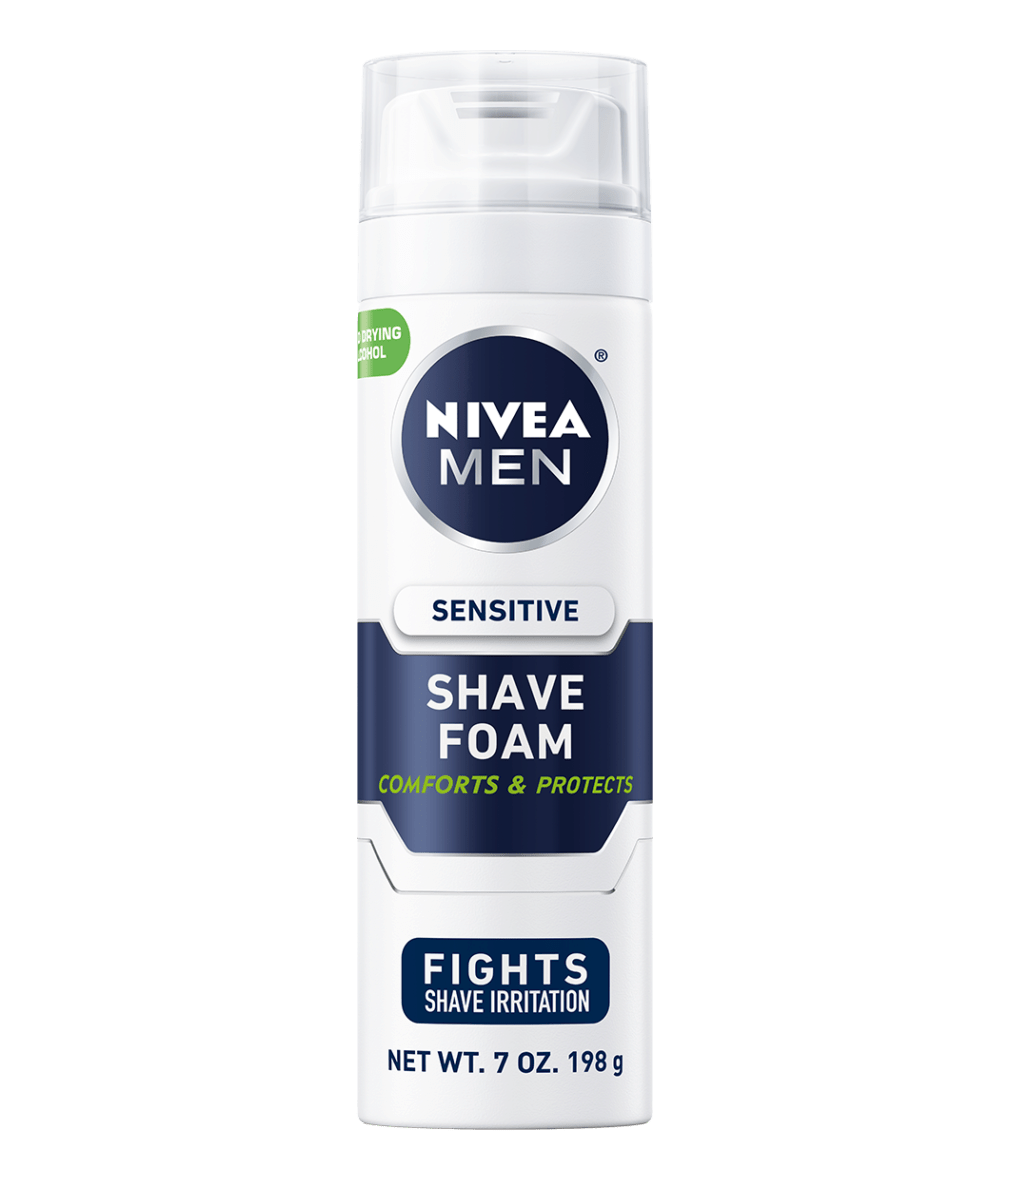 Ingang Besmettelijke ziekte Dood in de wereld Sensitive Shaving Foam - Protect From Shaving Irritation | NIVEA MEN®